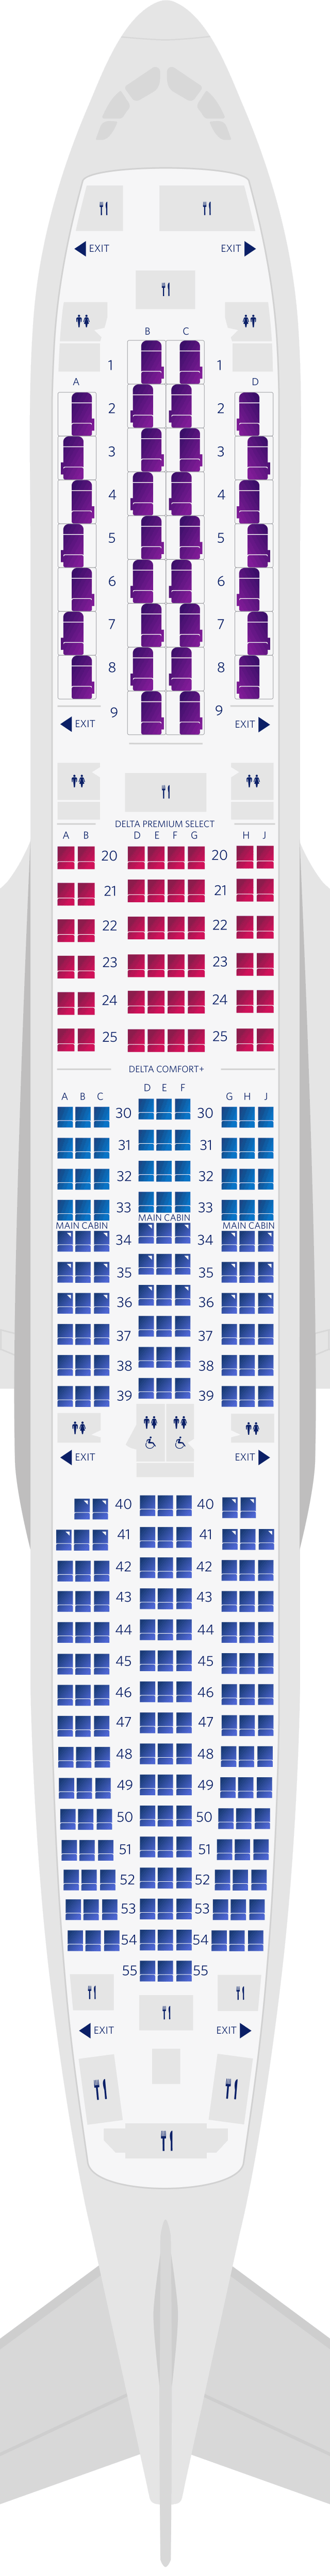  空中巴士A350-900 4客艙座位圖